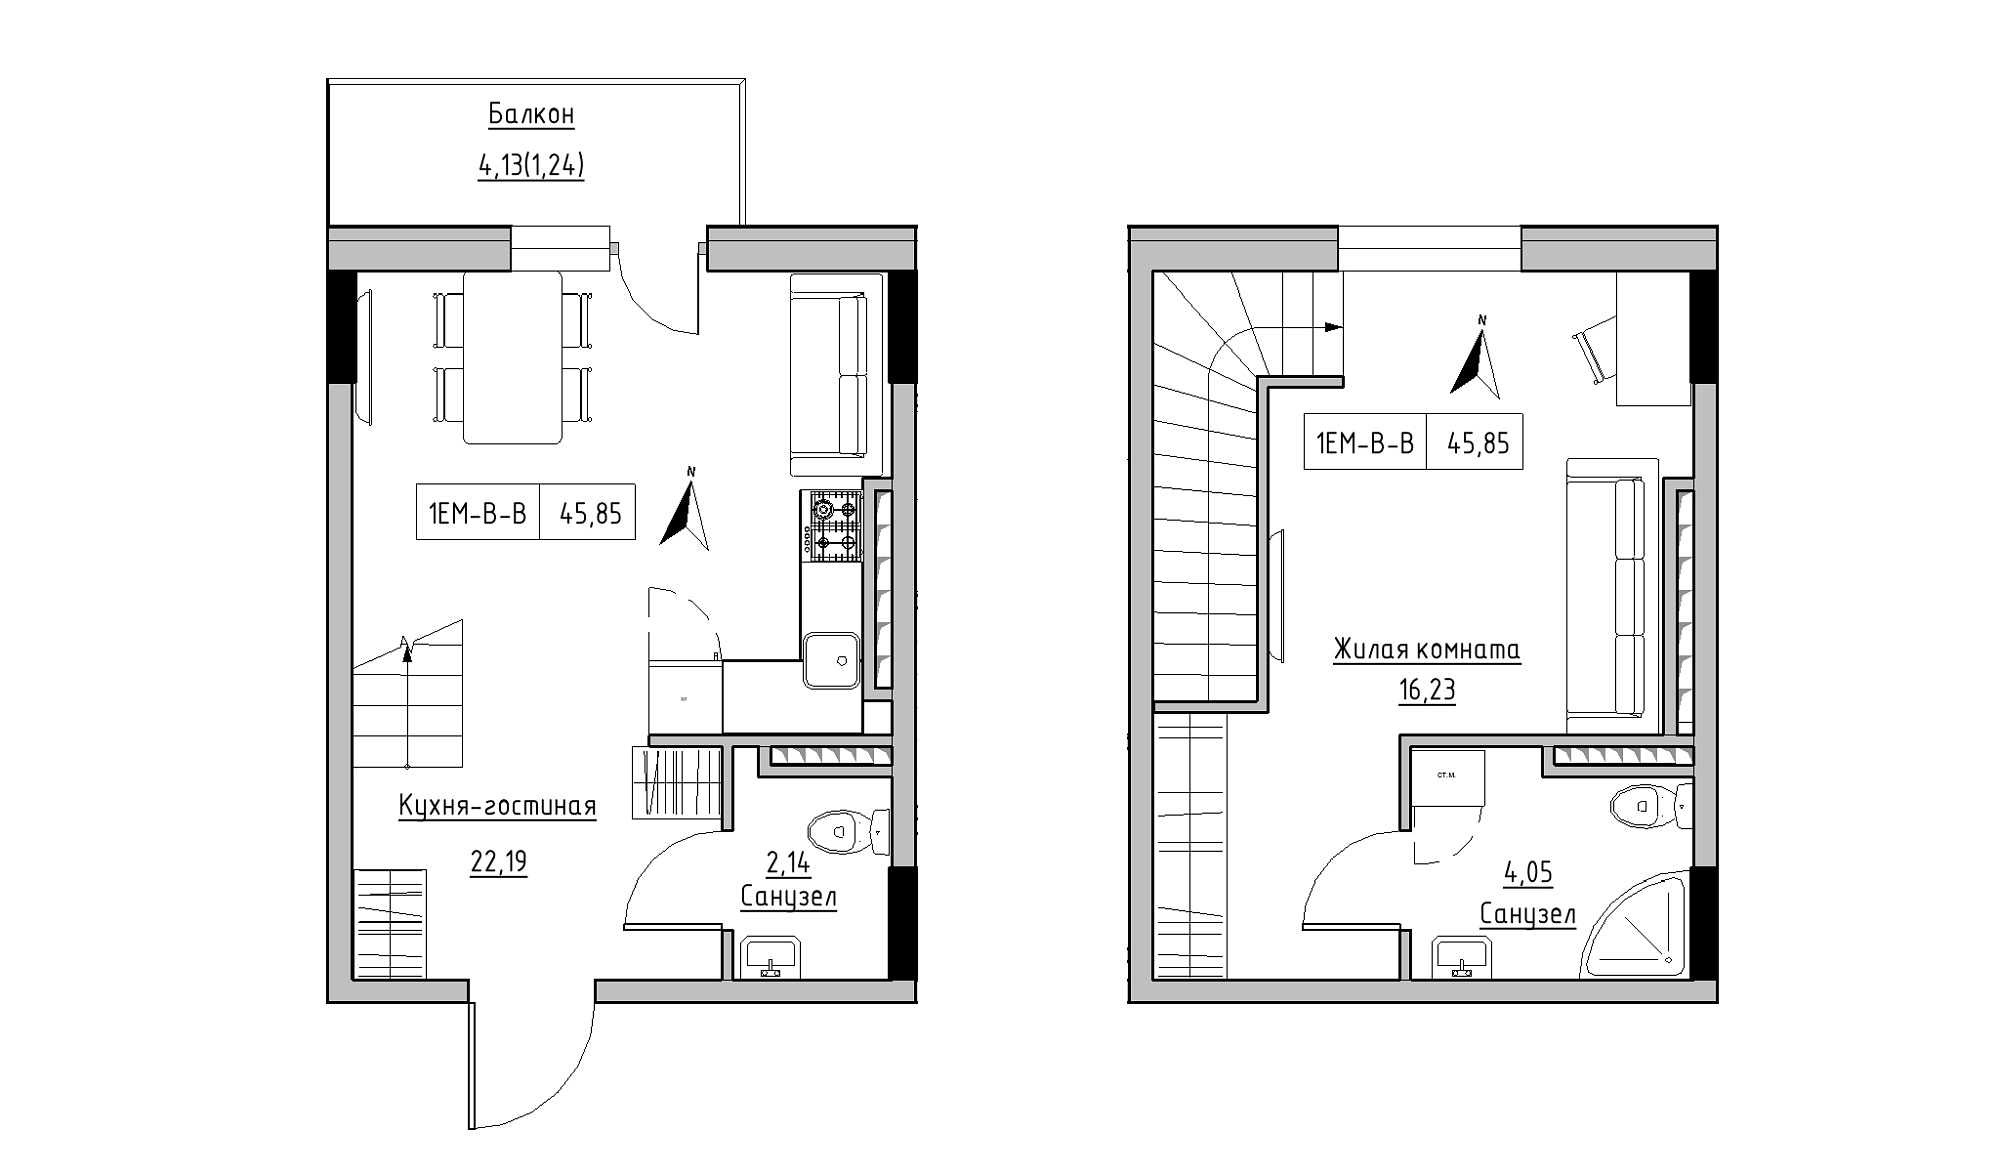 Planning 2-lvl flats area 45.85m2, KS-025-05/0007.